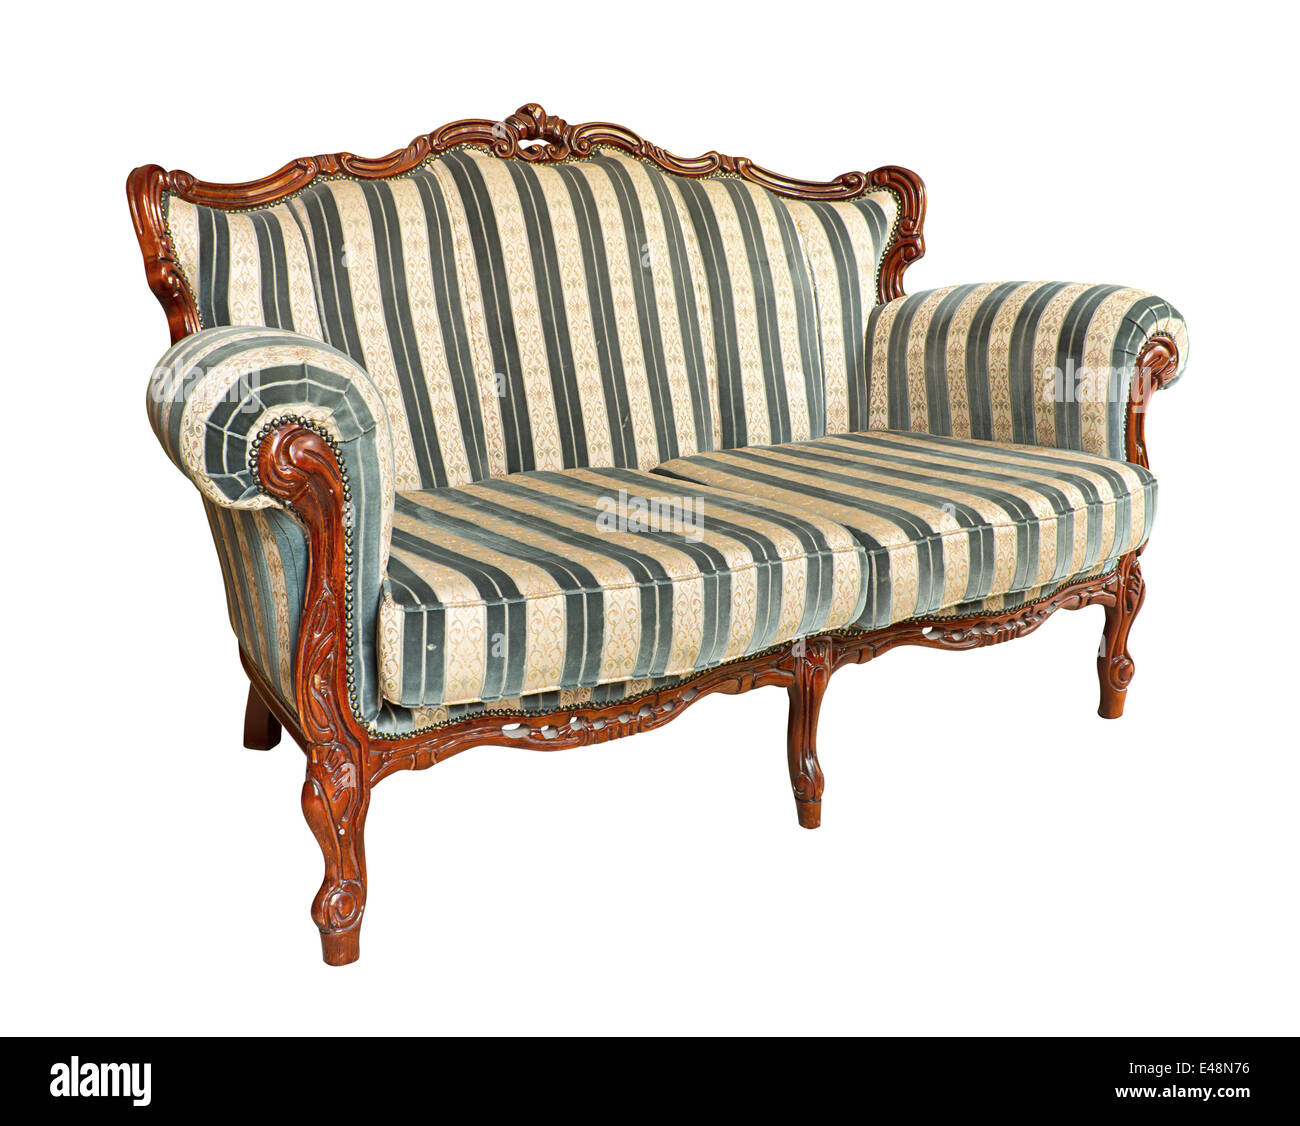 Vintage canapé un morceau de meubles de reproduction d'un projet de restauration ou de reupholstery populaires Banque D'Images